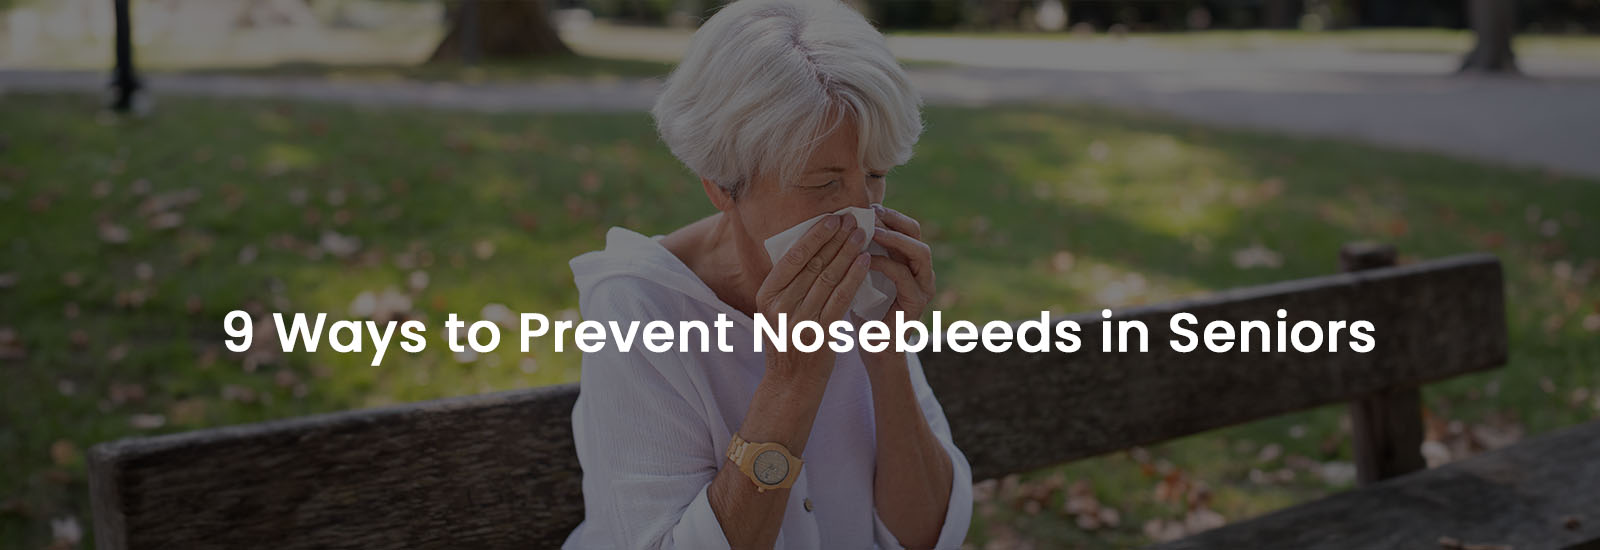 9 Ways to Prevent Nosebleeds in Seniors | Banner Image